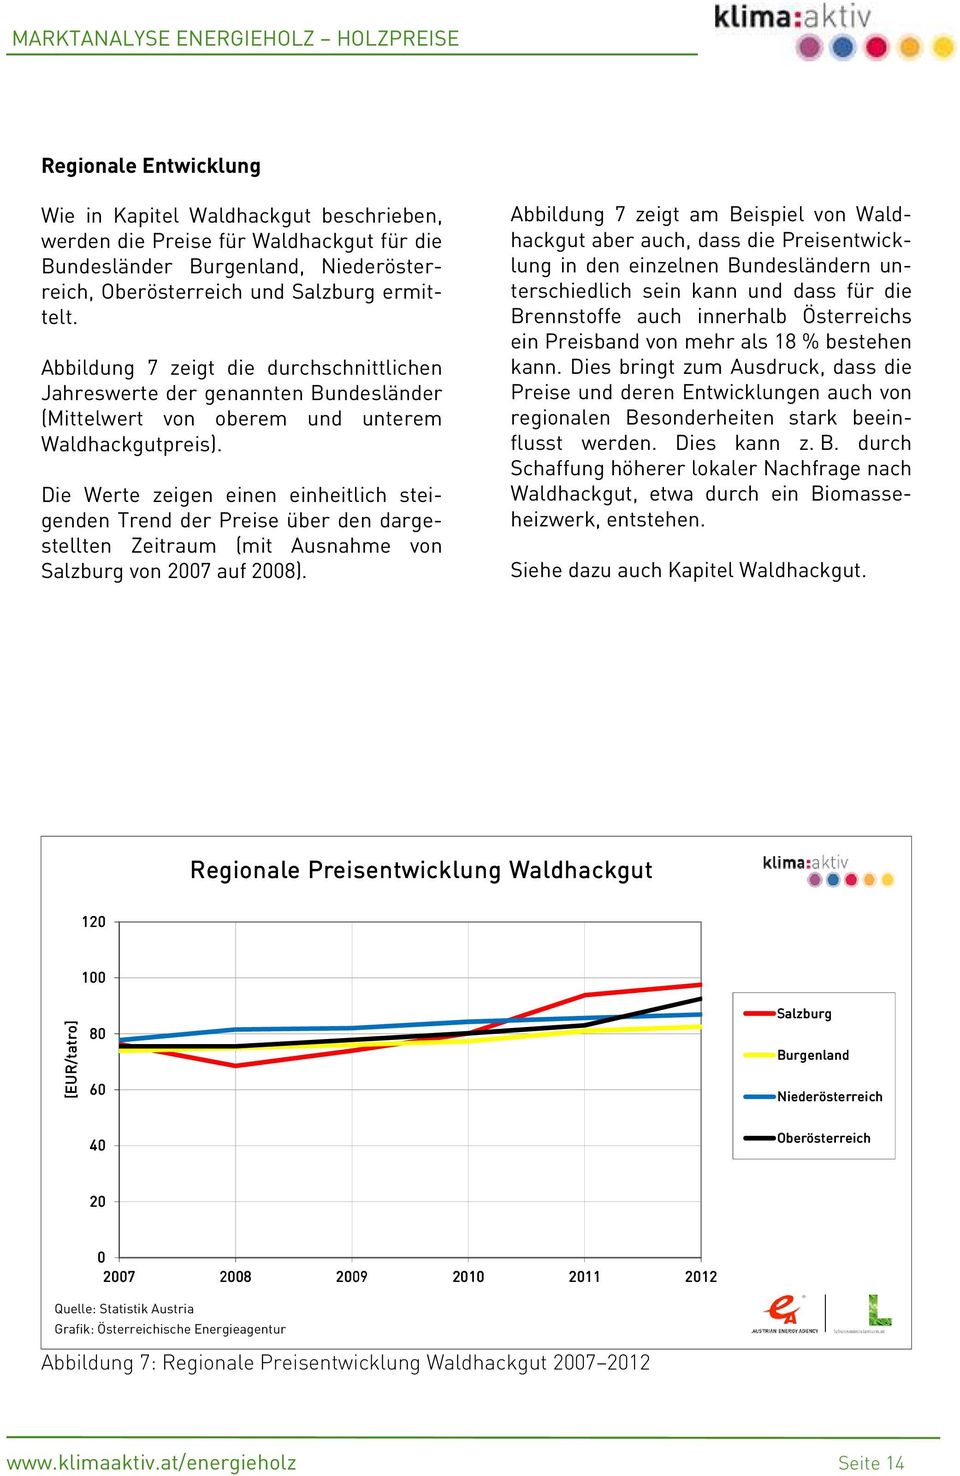 Die Werte zeigen einen einheitlich steigenden Trend der Preise über den dargestellten Zeitraum (mit Ausnahme von Salzburg von 2007 auf 2008).